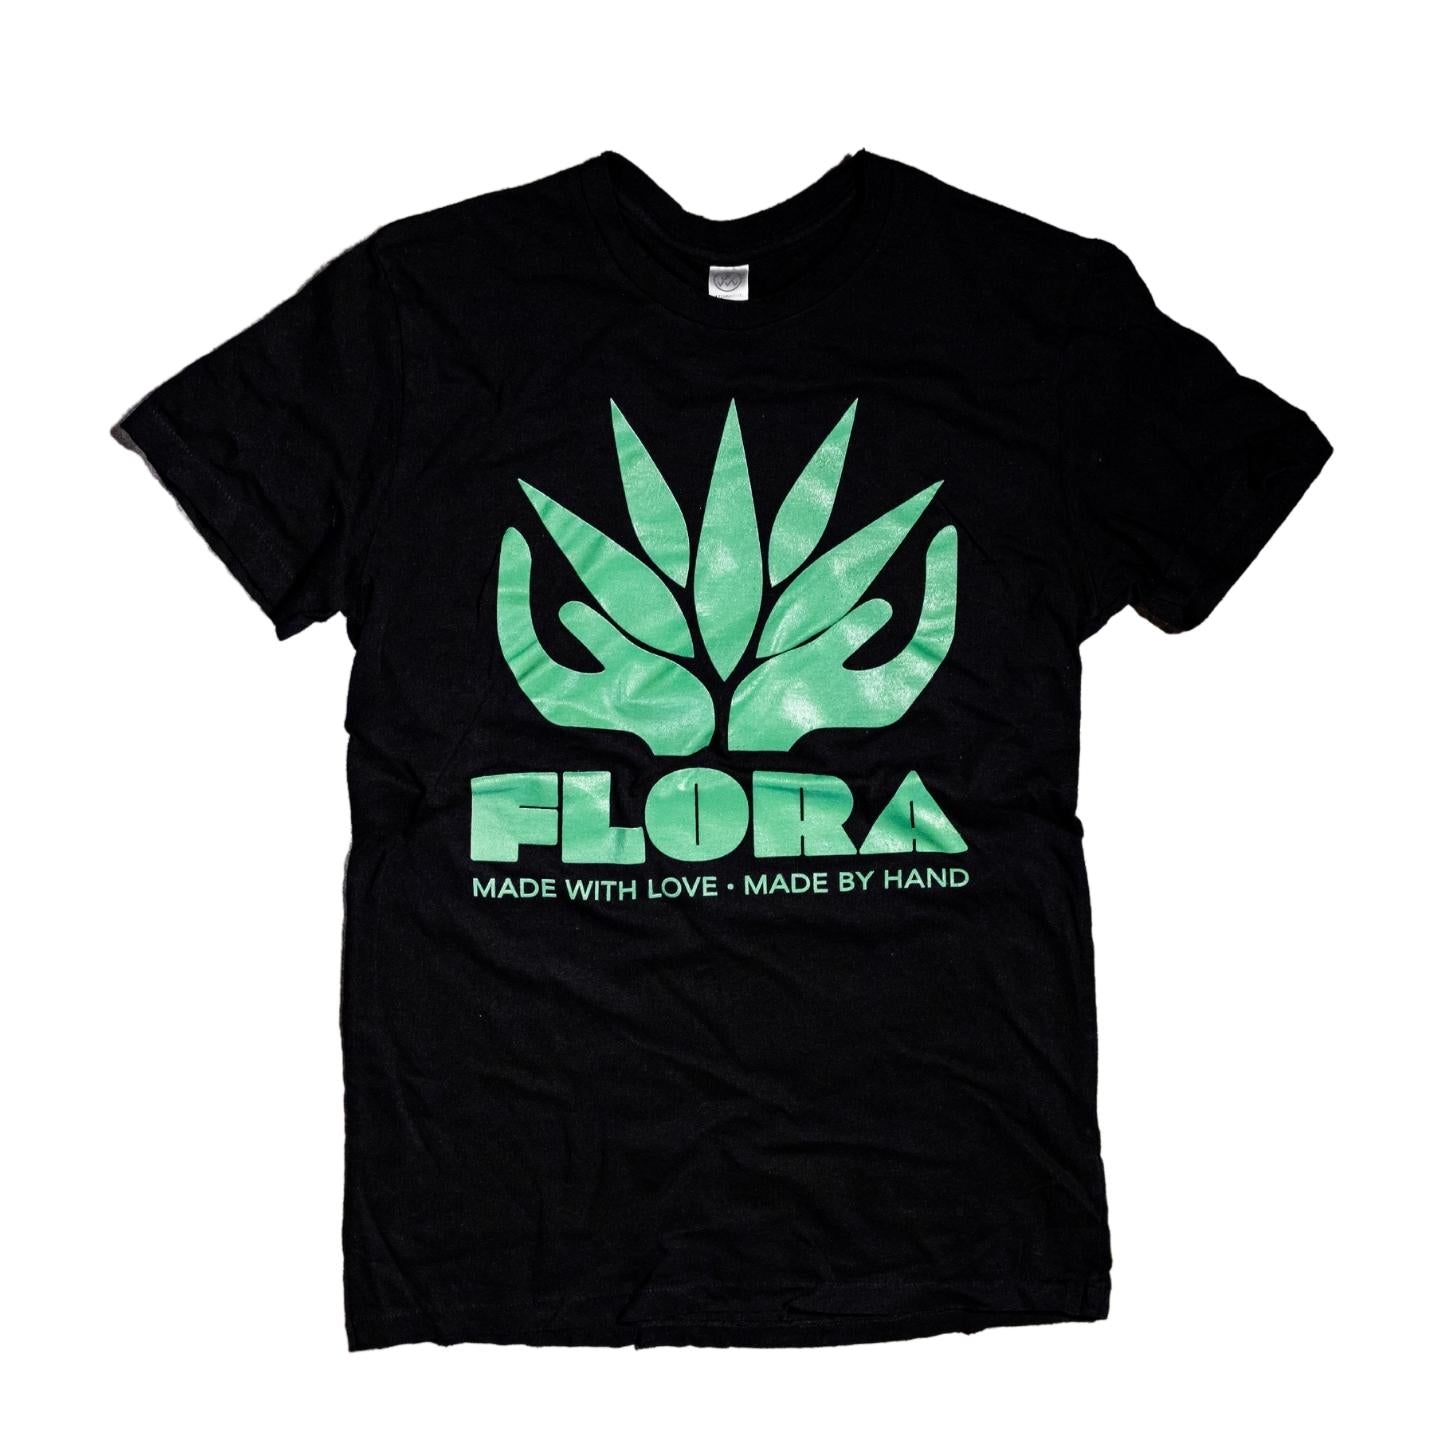 FLORA Shirt | Black & Green